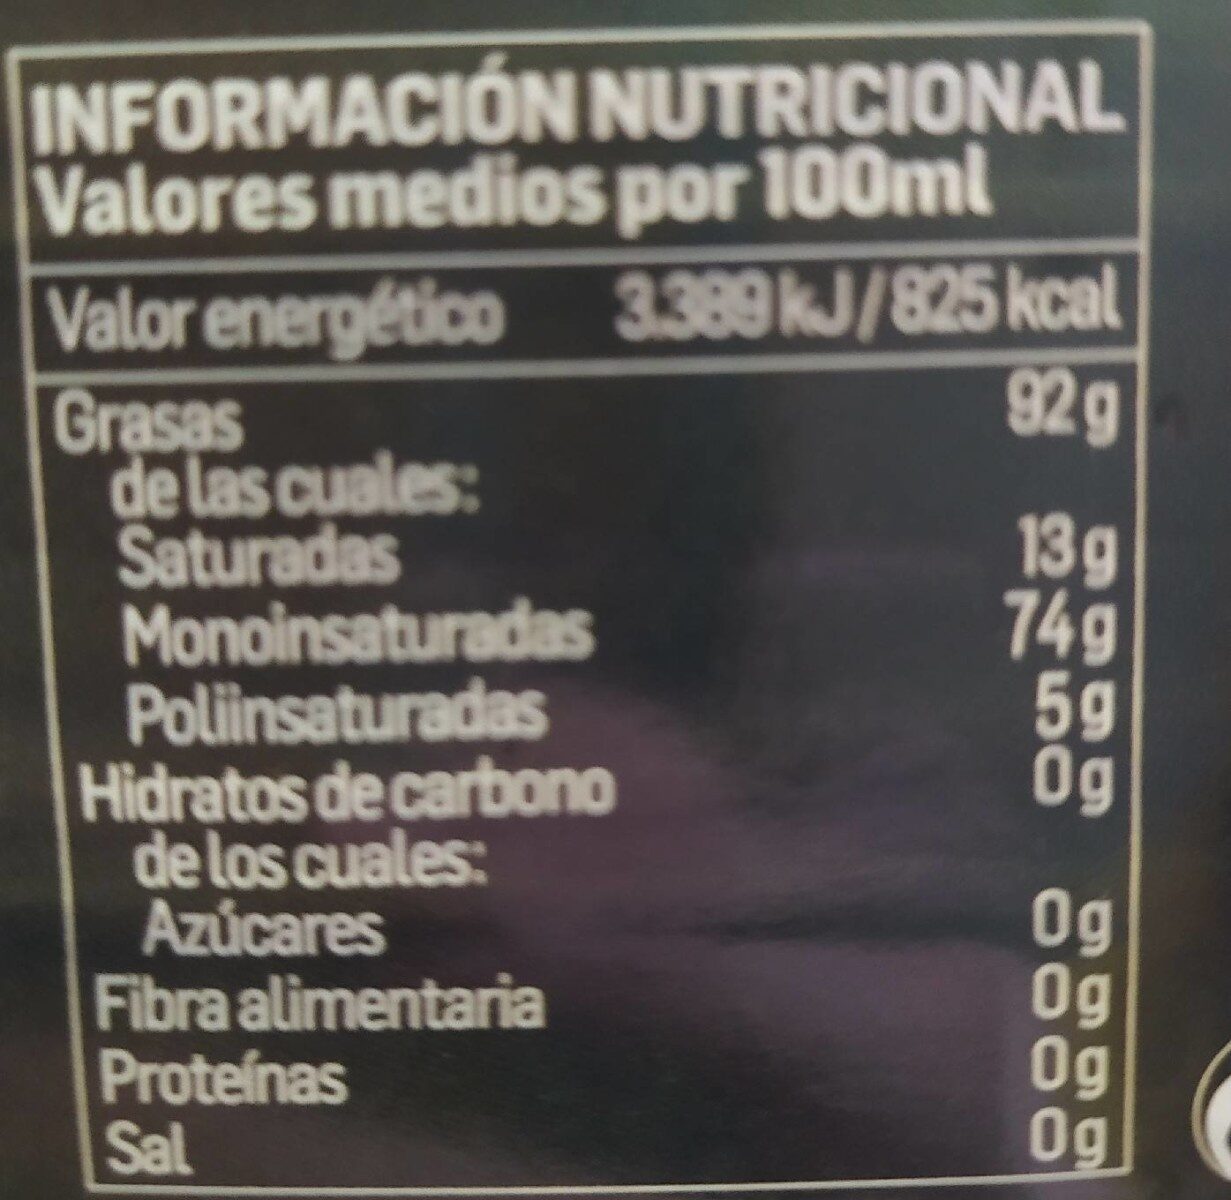 Aceite de oliva virgen extra - Nutrition facts - fr